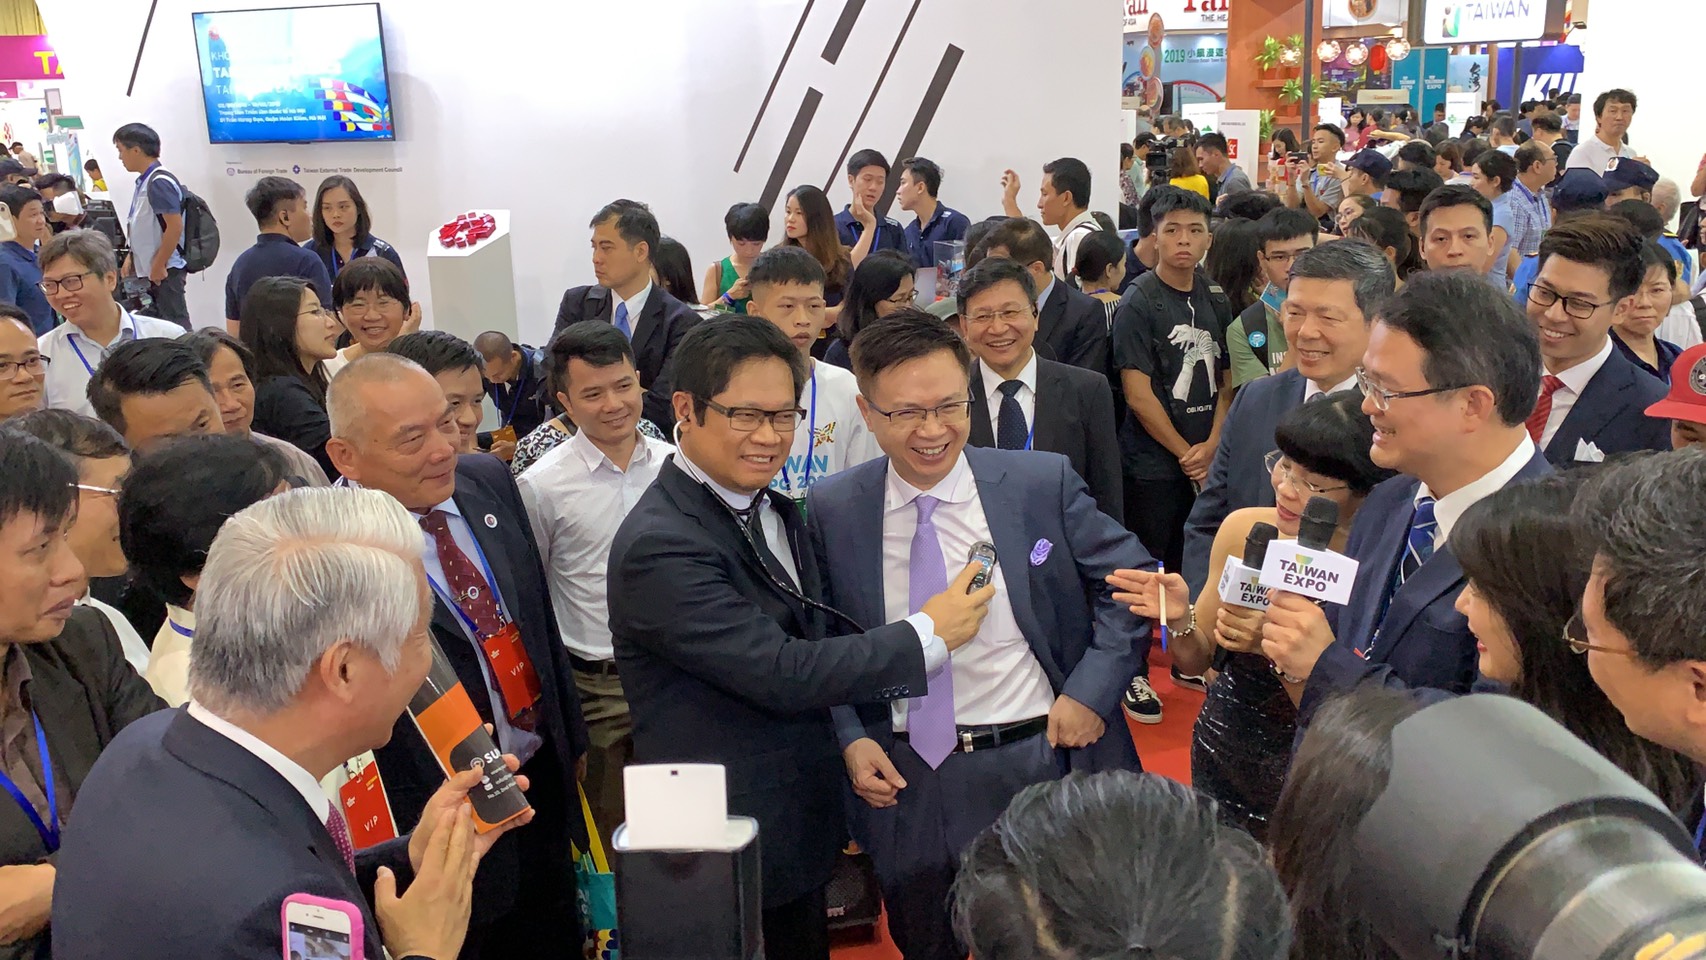 貿協協助臺灣智慧醫療生技產品與服務開拓越南商機